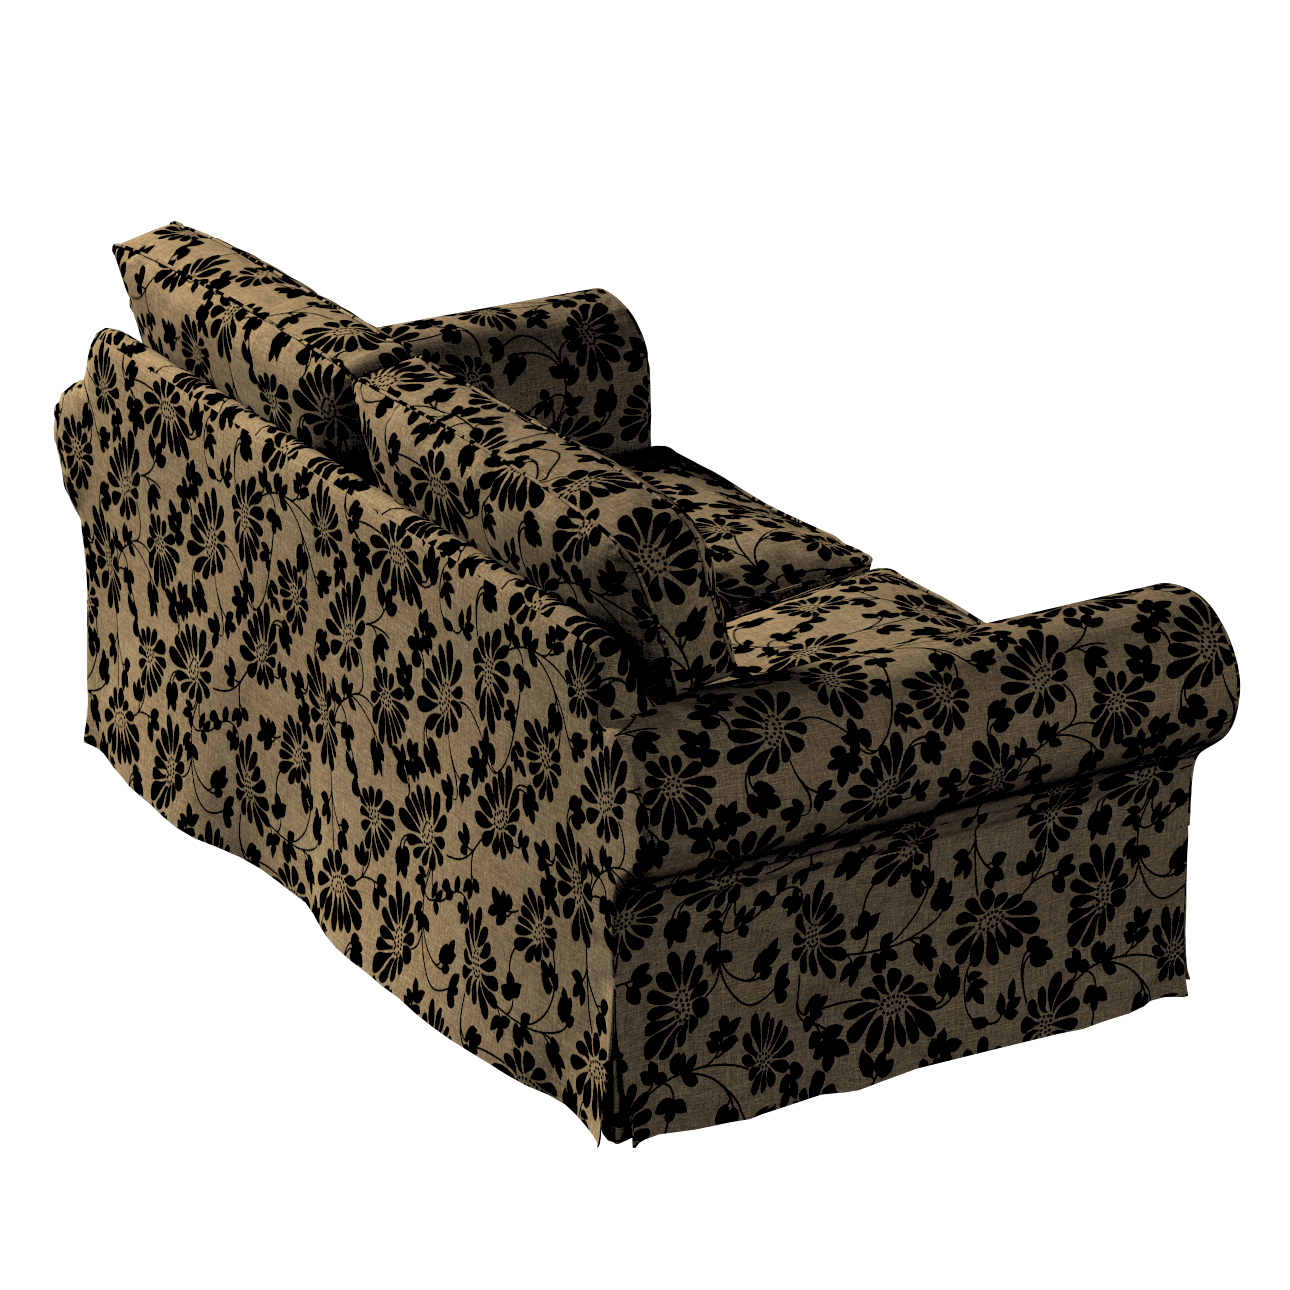 Bezug für Ektorp 2-Sitzer Sofa nicht ausklappbar, beige-schwarz, Sofabezug günstig online kaufen